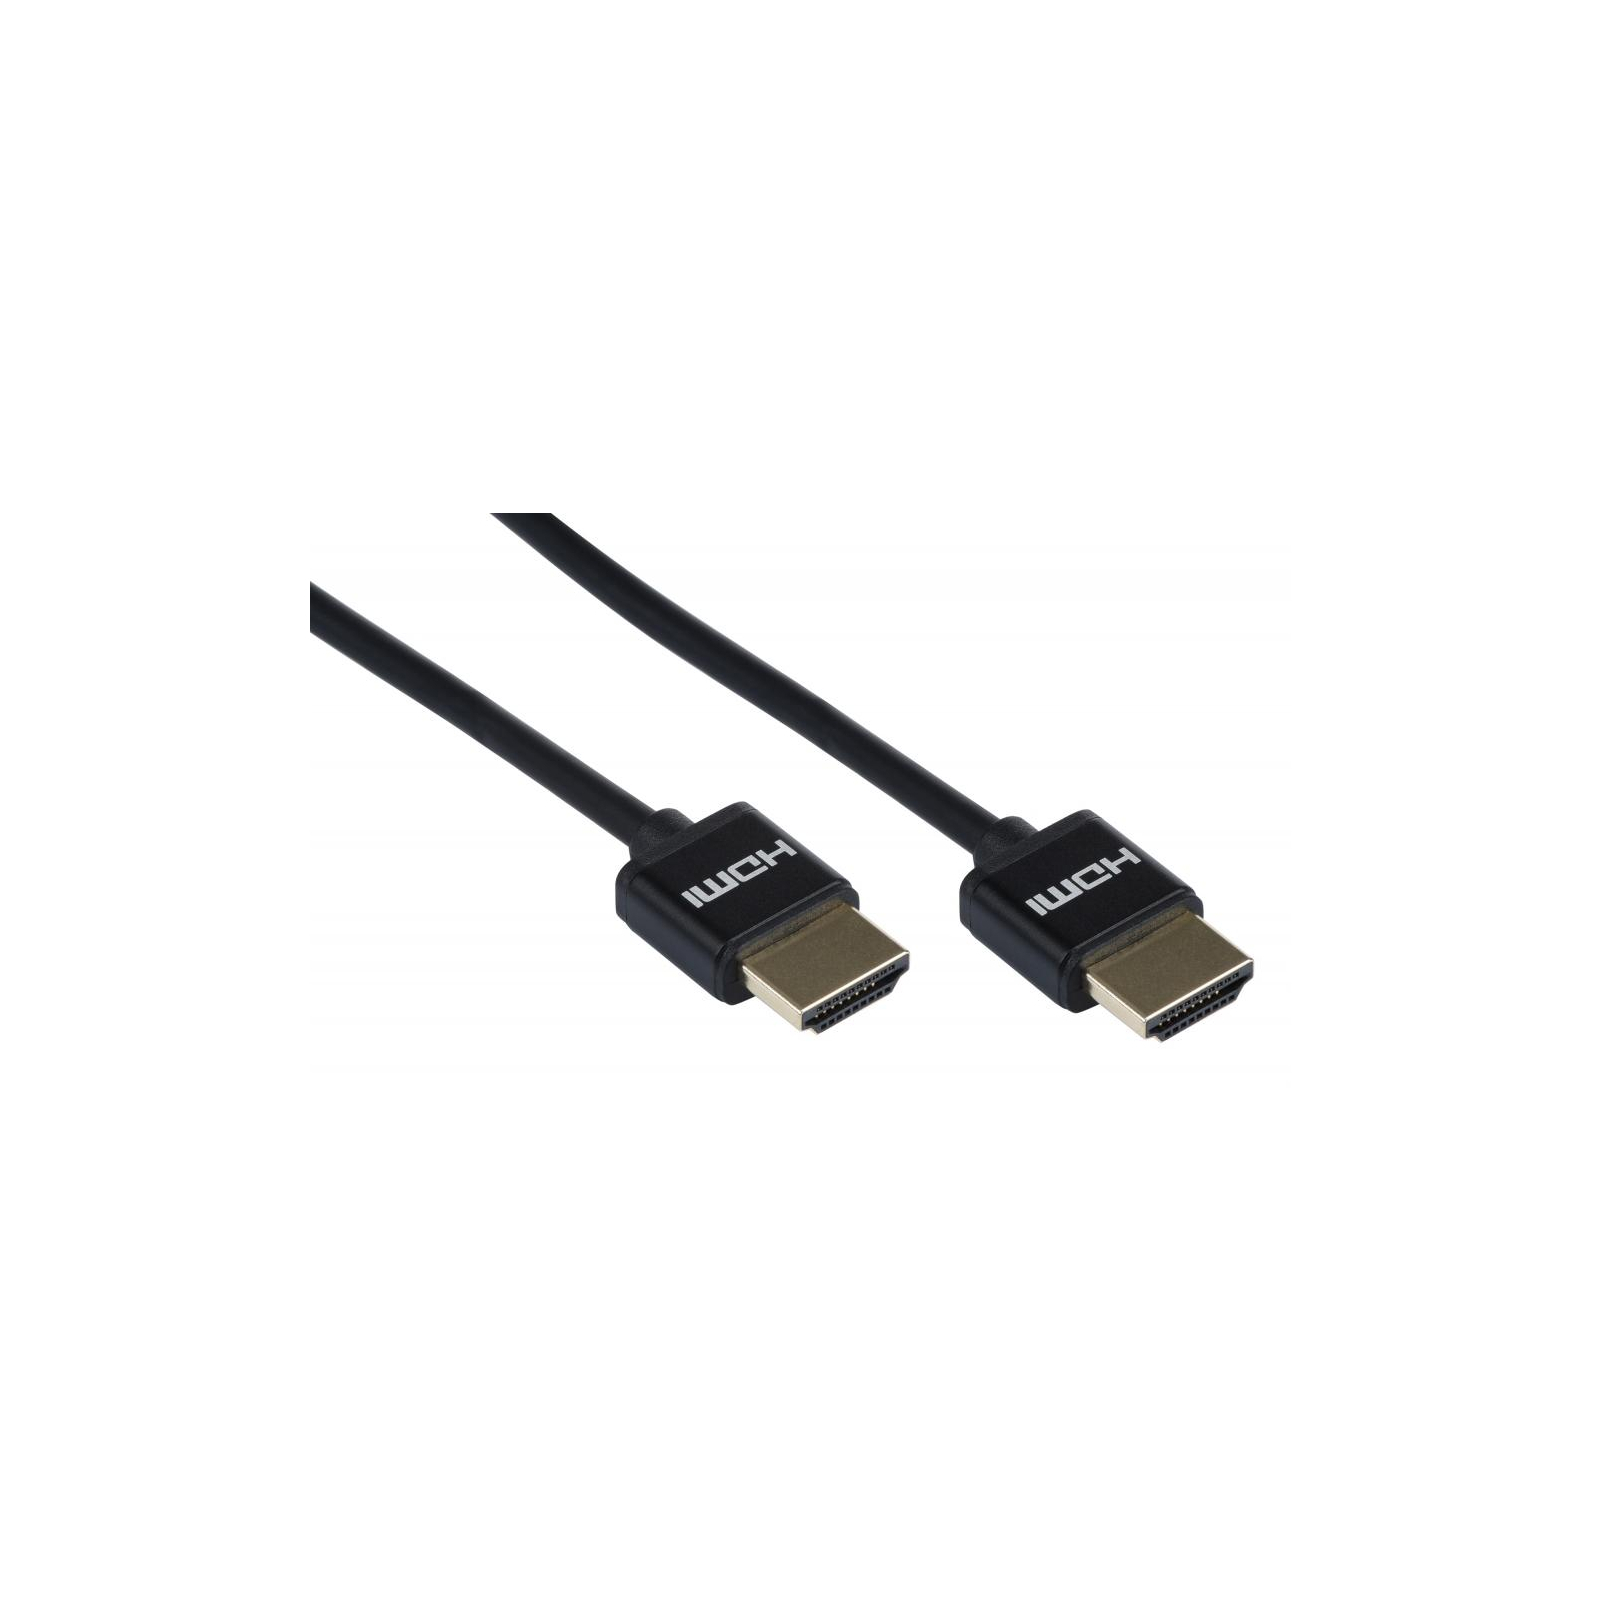 Кабель мультимедийный HDMI to HDMI 3.0m 2.0 Slim black 2E (2EW-1119-3m) изображение 2